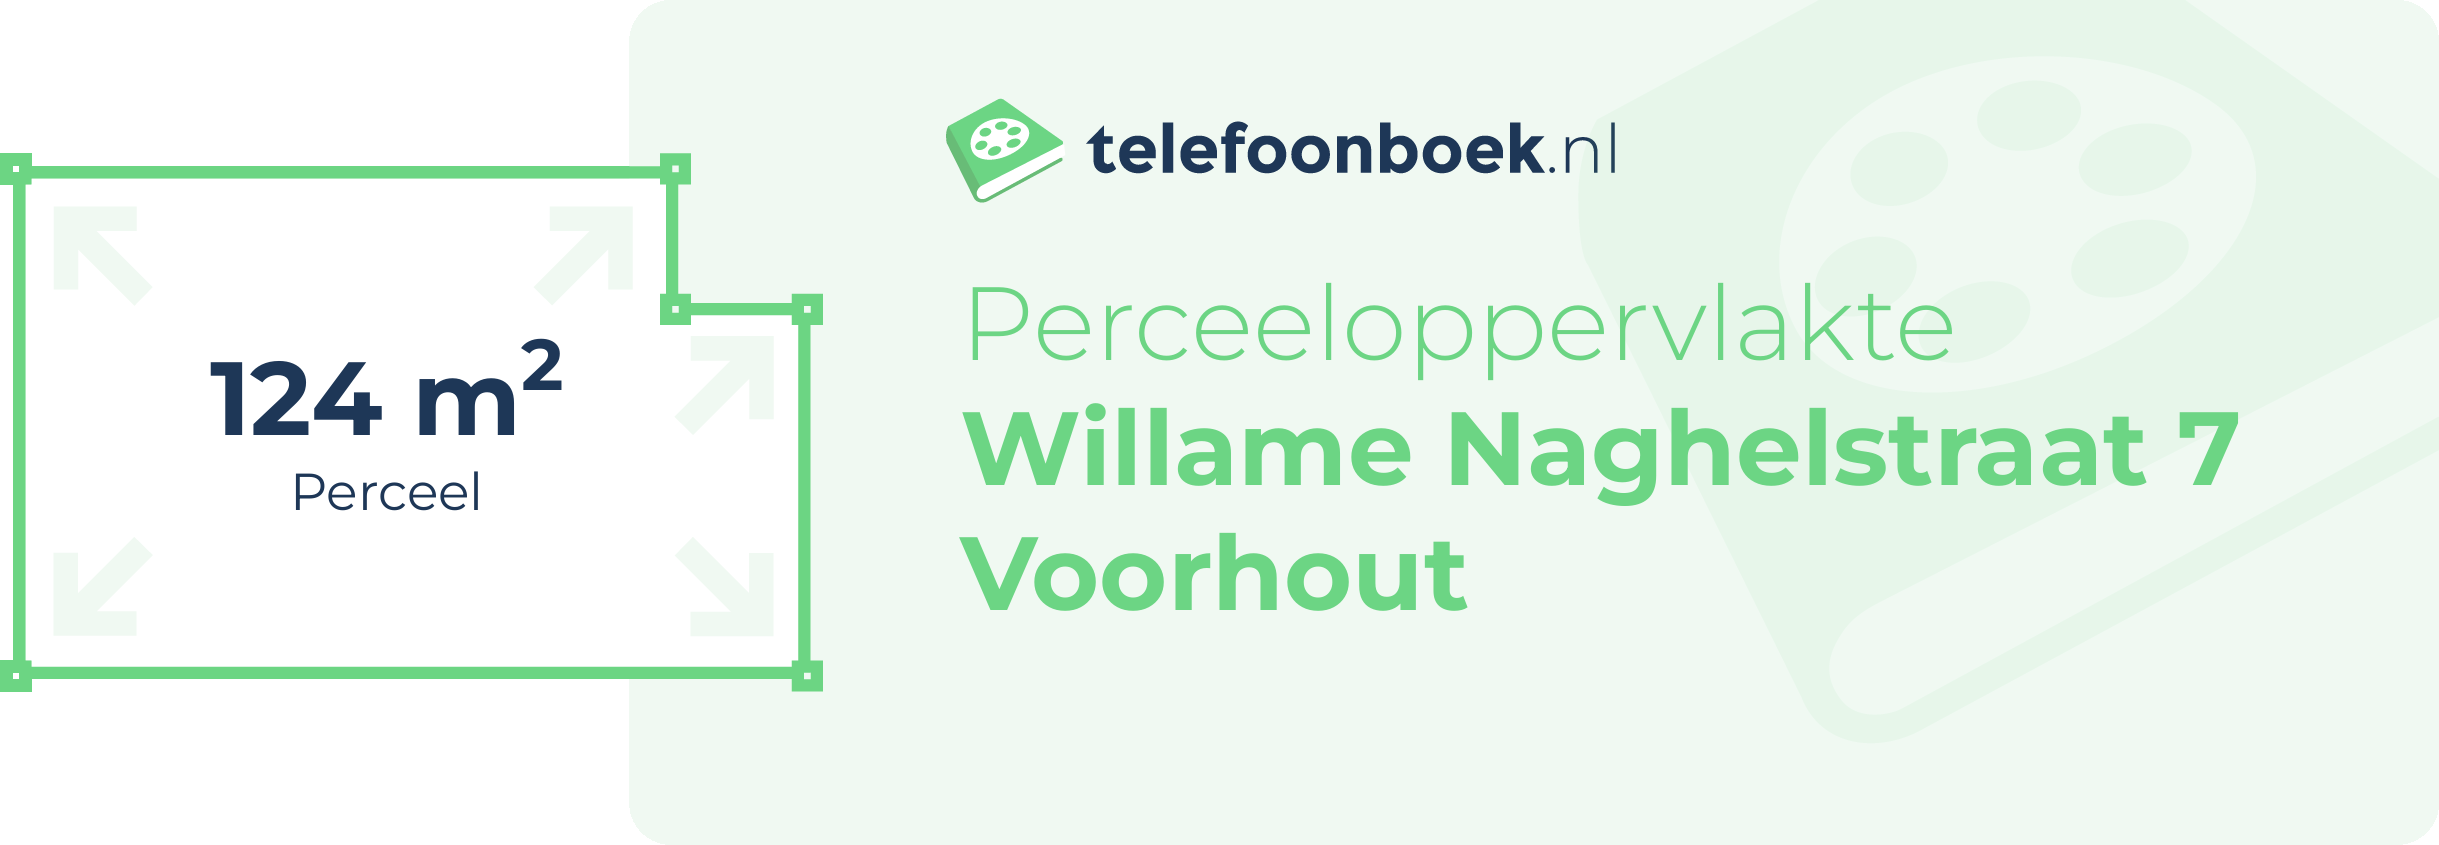 Perceeloppervlakte Willame Naghelstraat 7 Voorhout